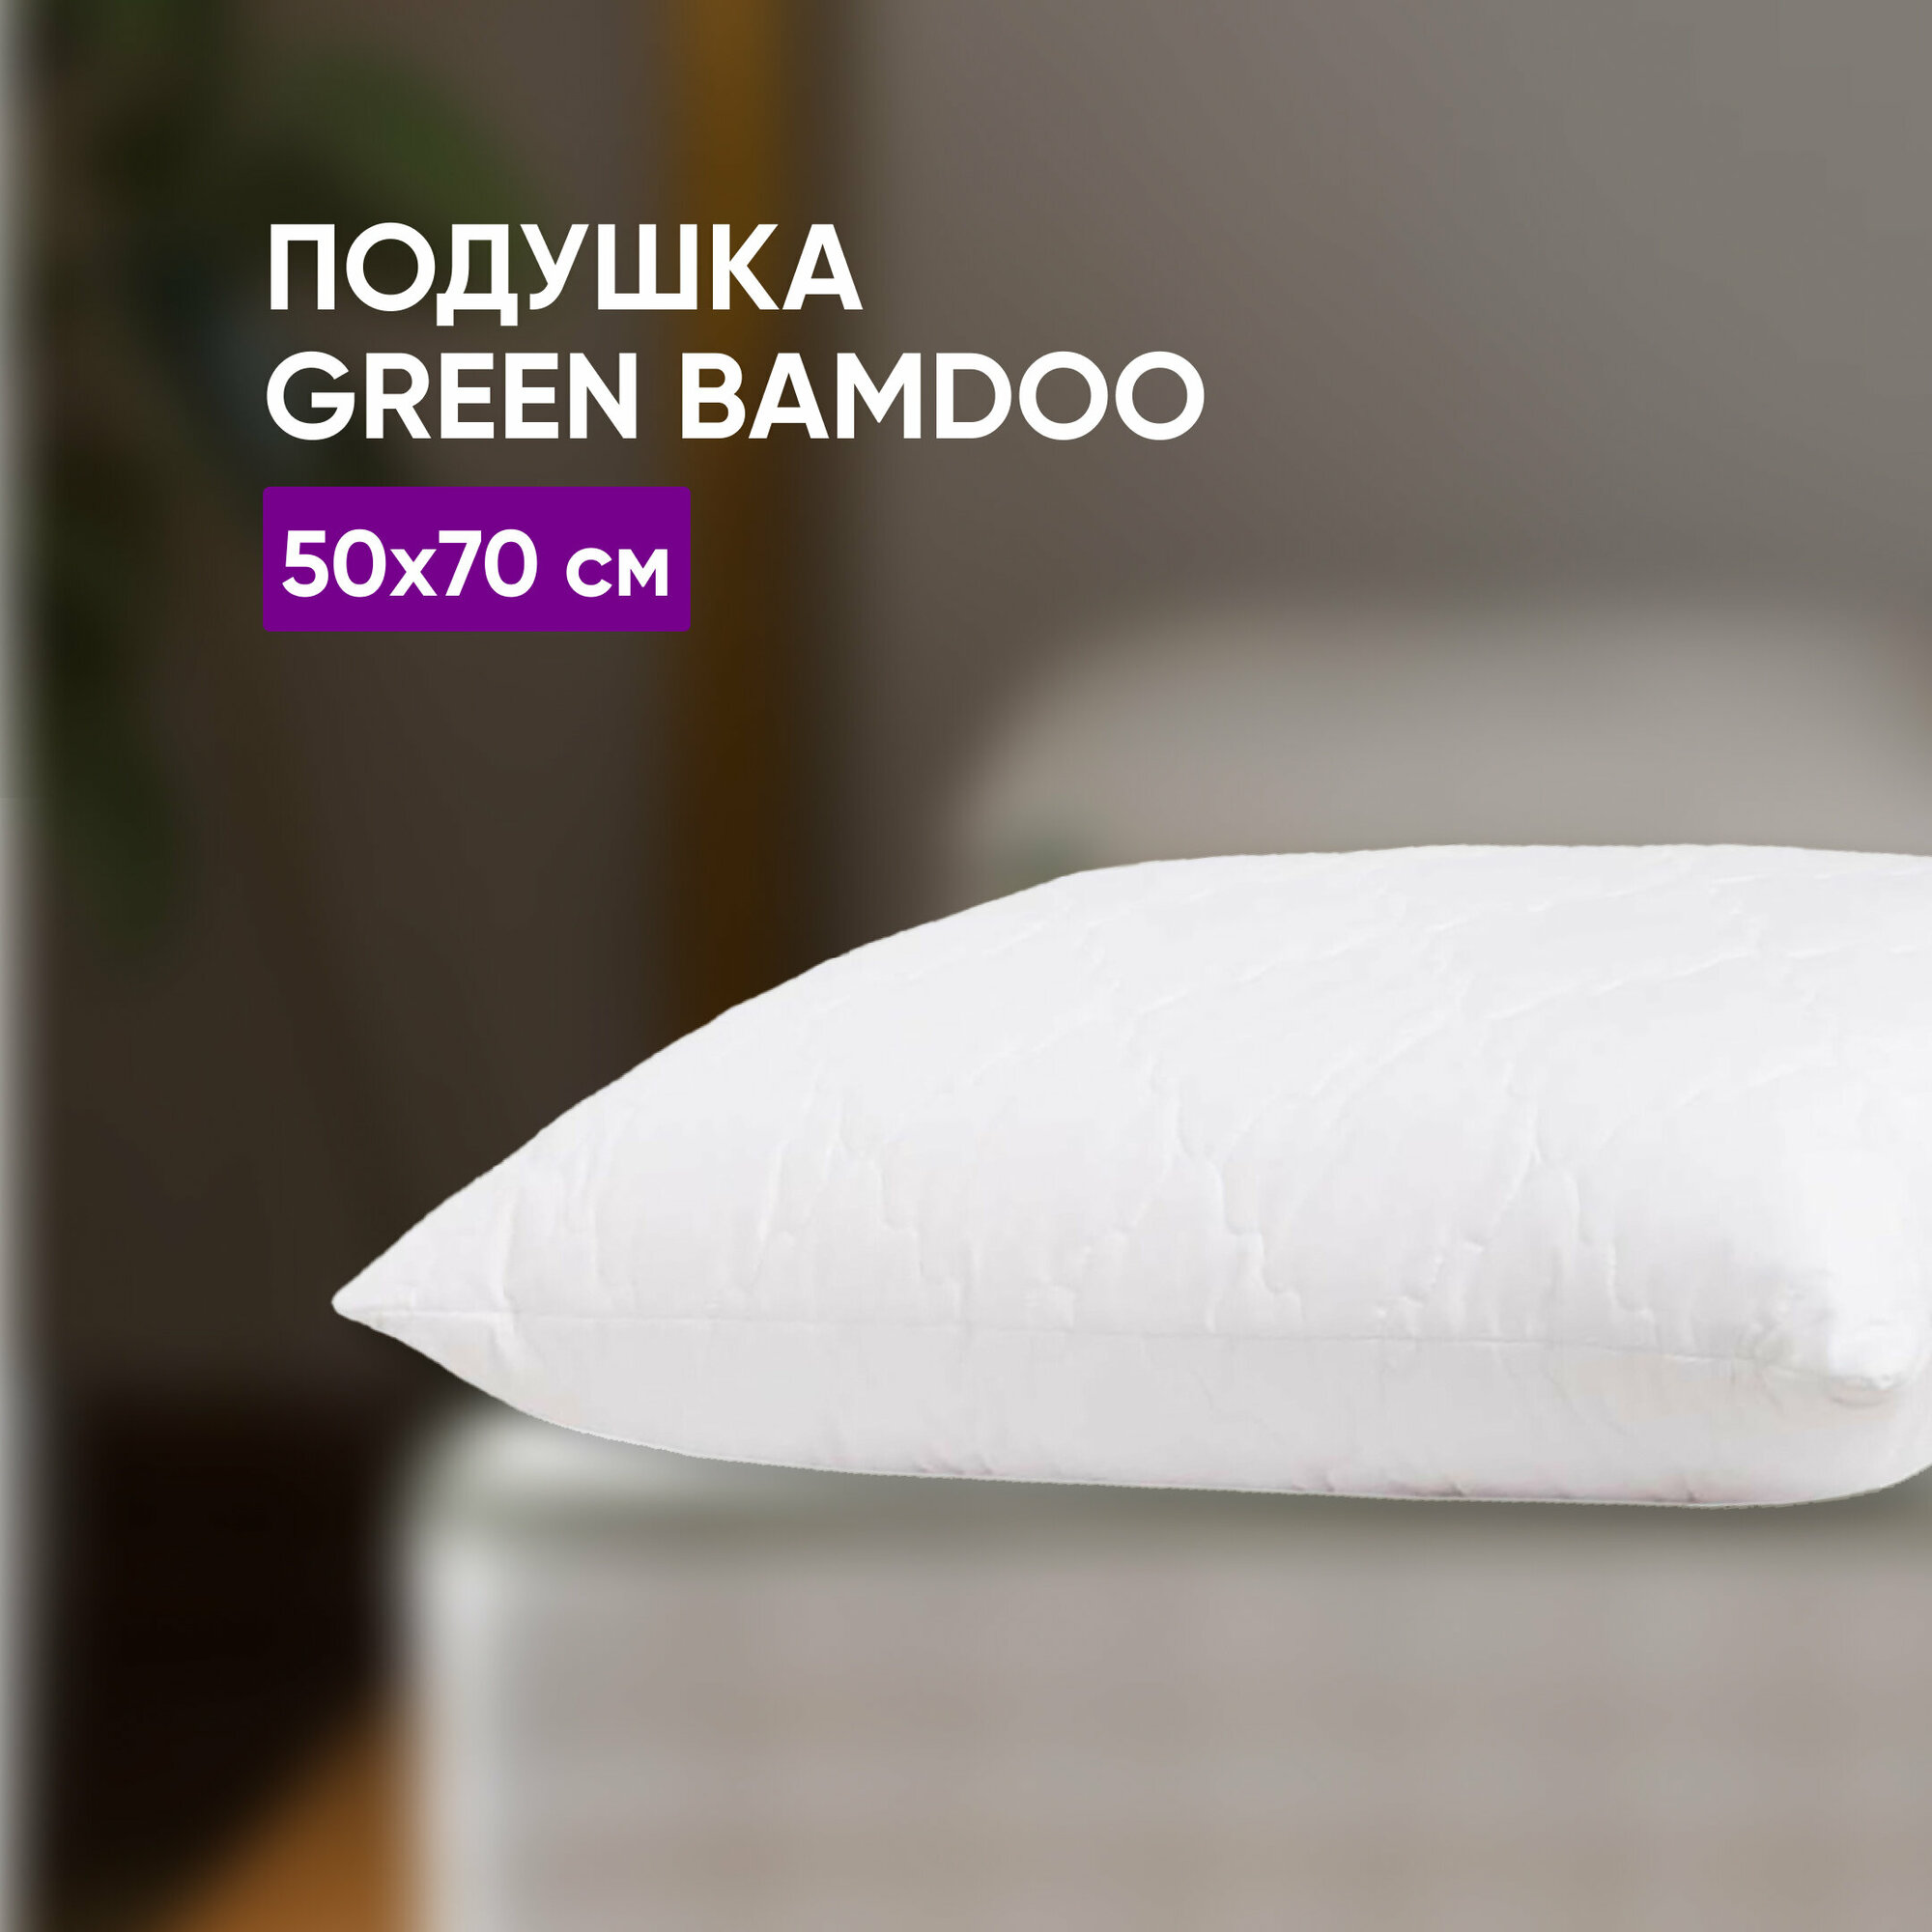 Подушки Green bamboo 50x70 см для сна анатомическая